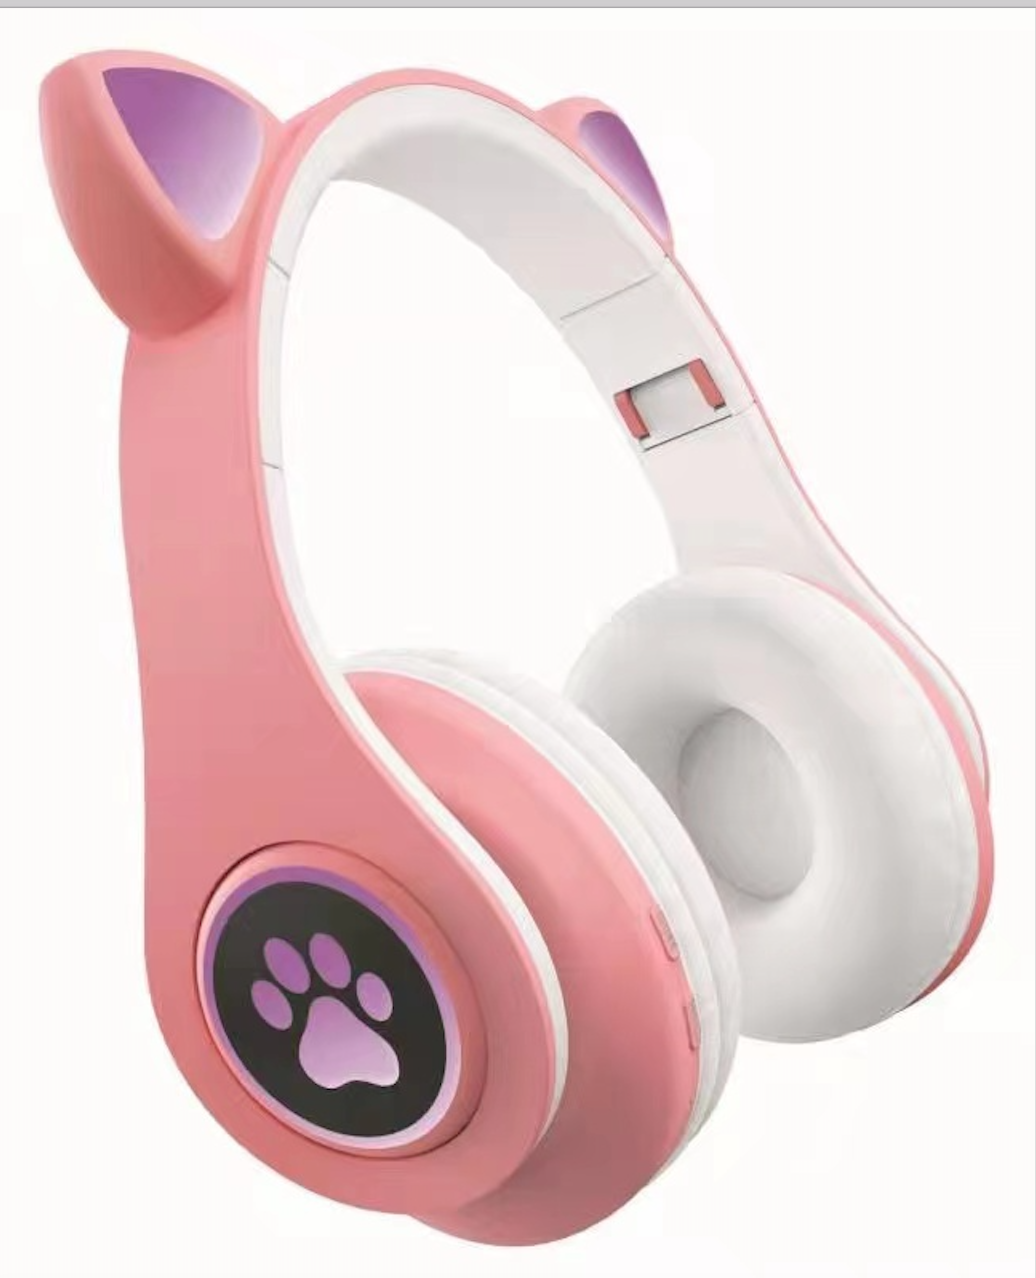 cat ear wireless headphone BT-728